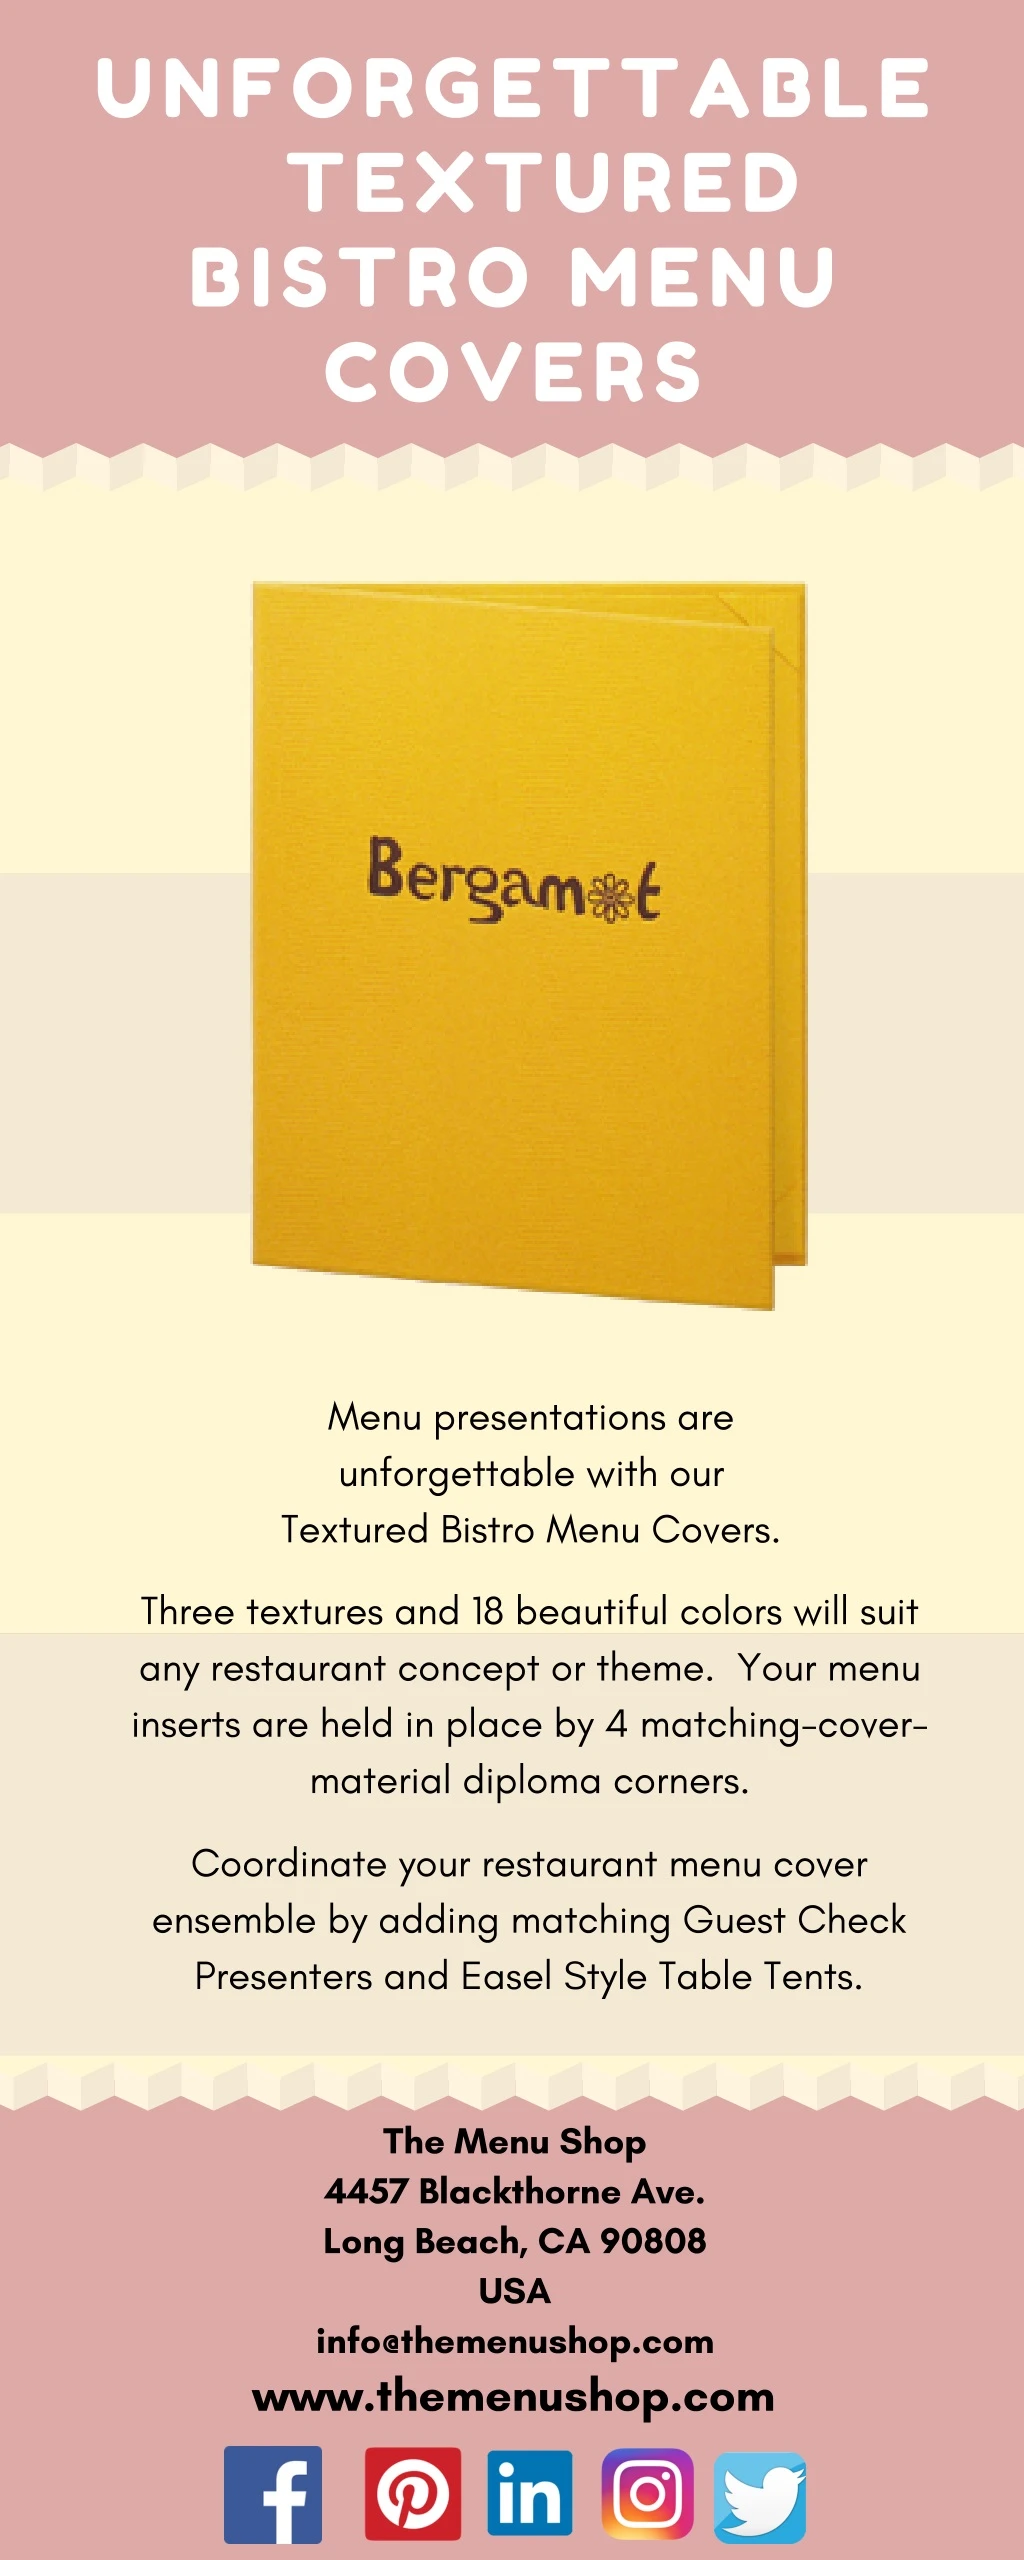 unforgettable textured bistro menu covers